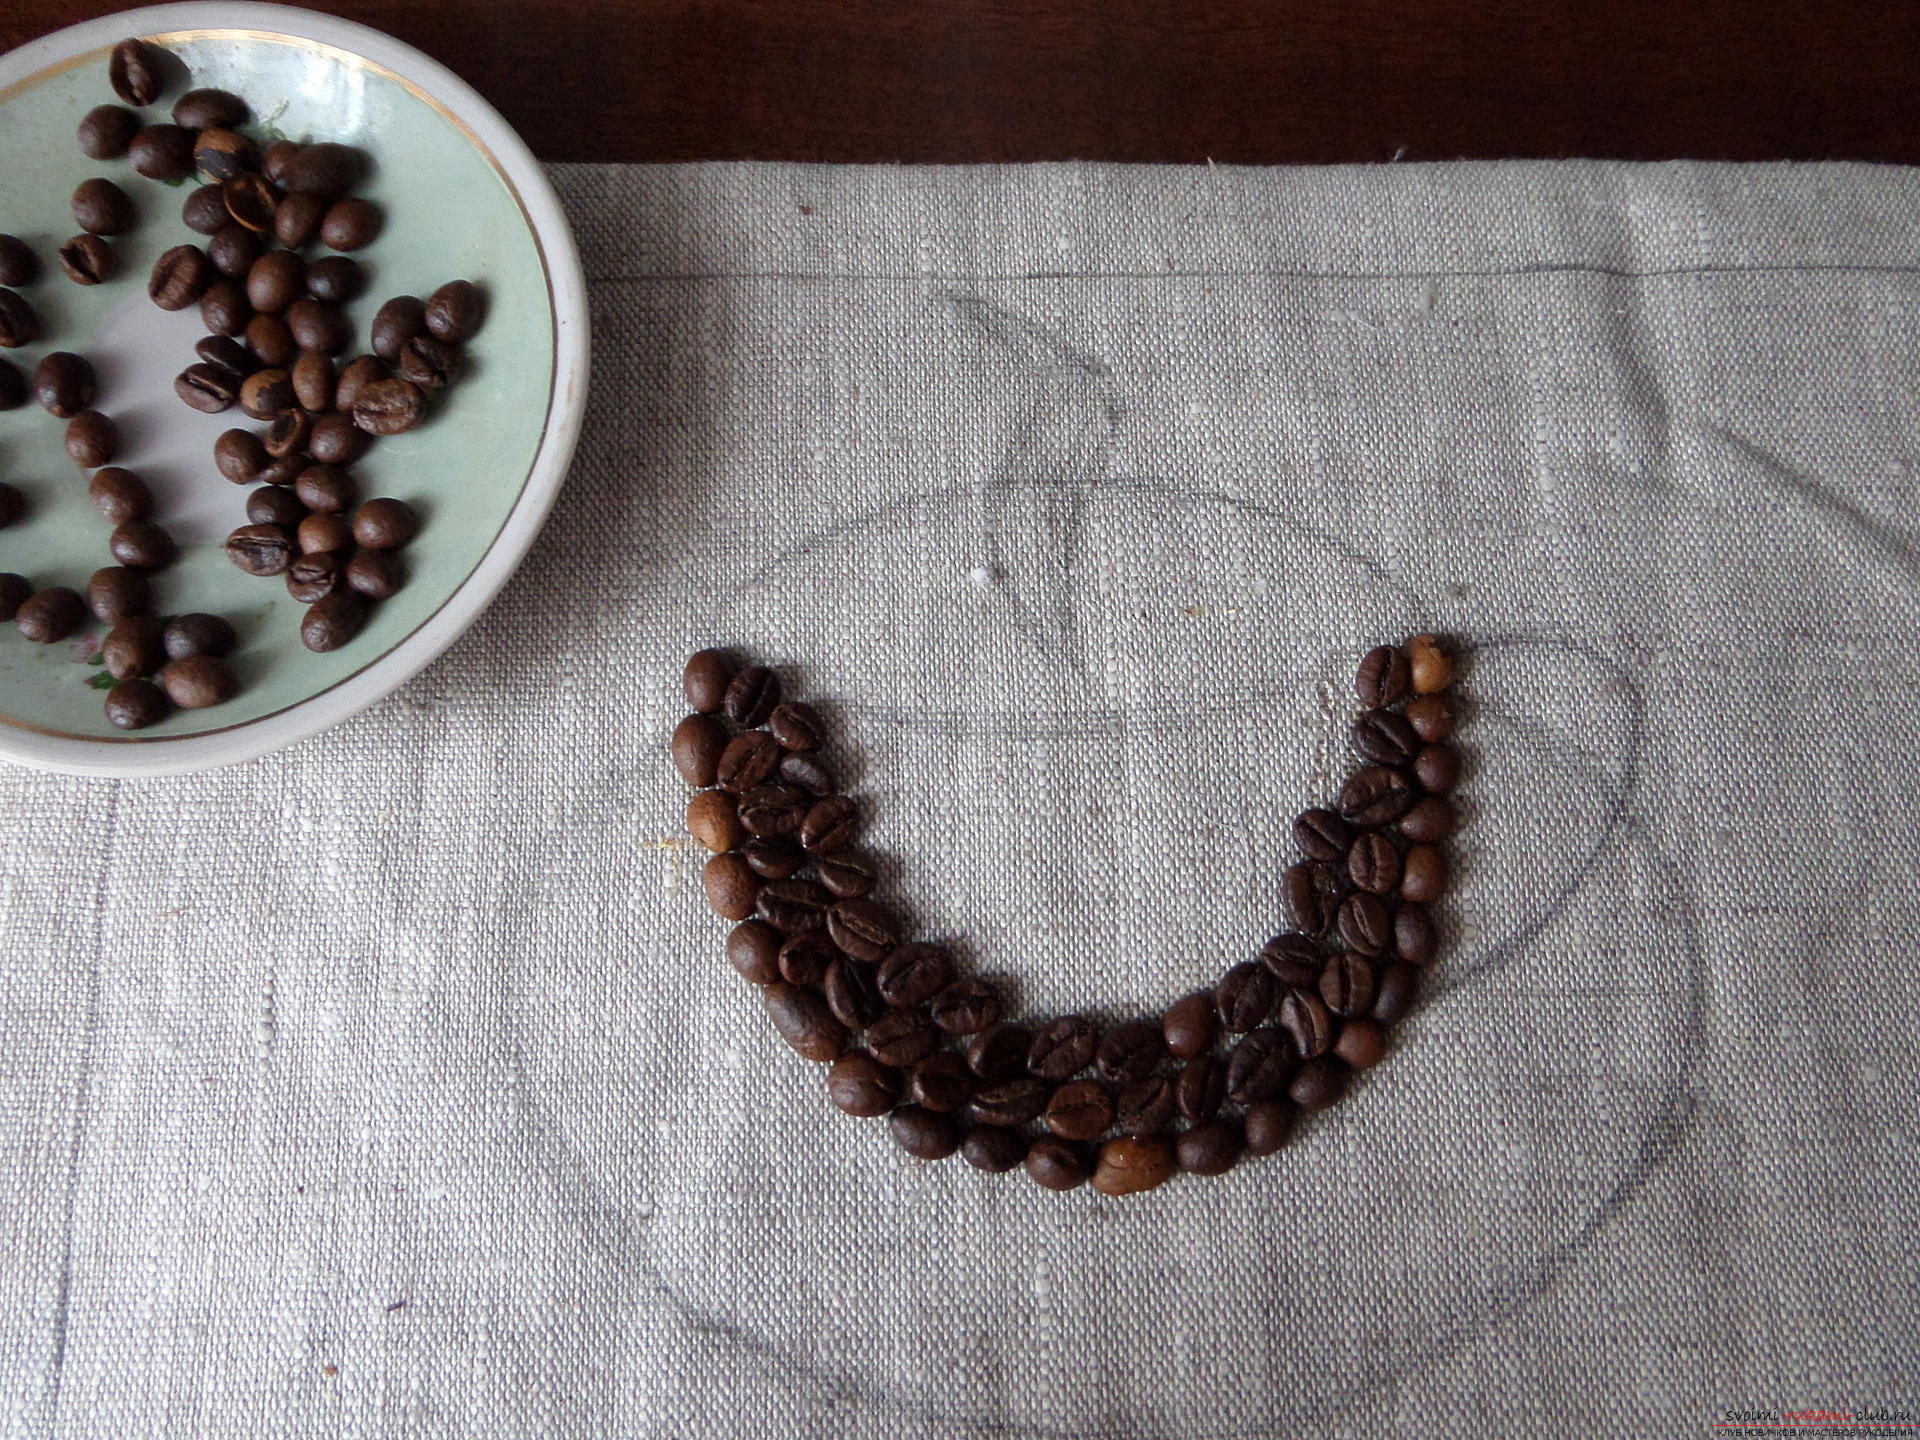 Этот мастер-класс с фото и описанием научит как делать кофейные картины из зерен кофе для кухни.. Фото №23